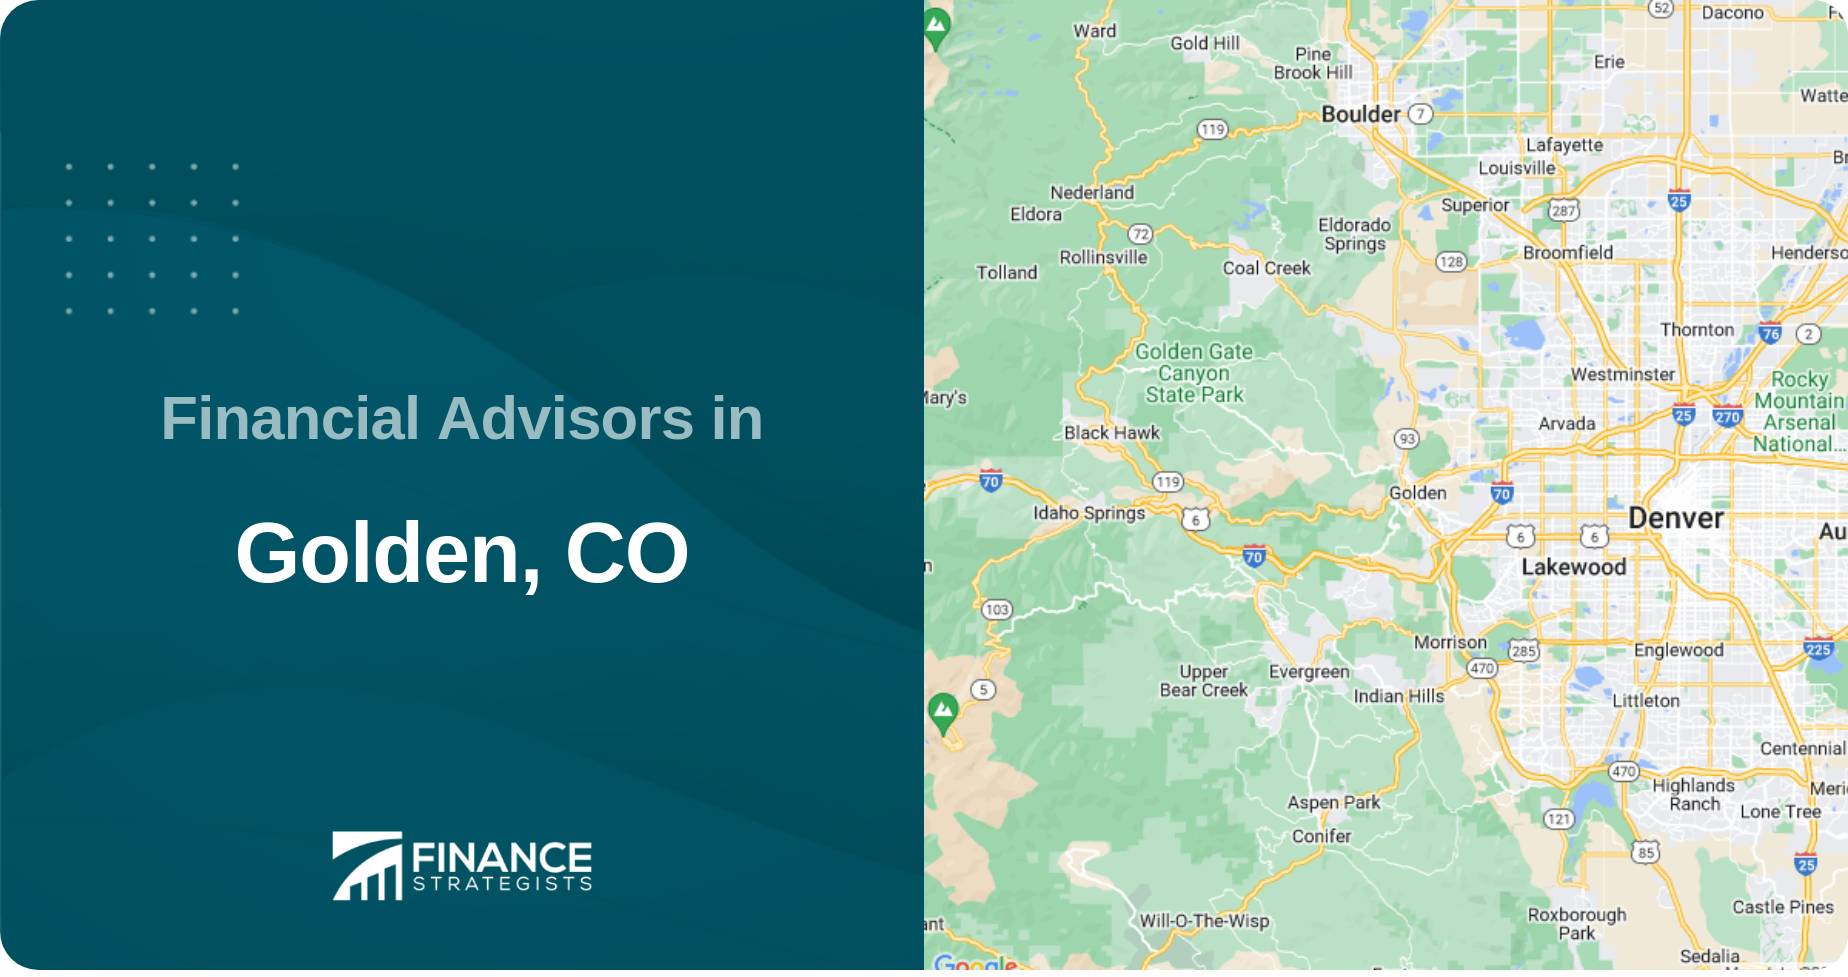 Financial Advisors in Golden, CO